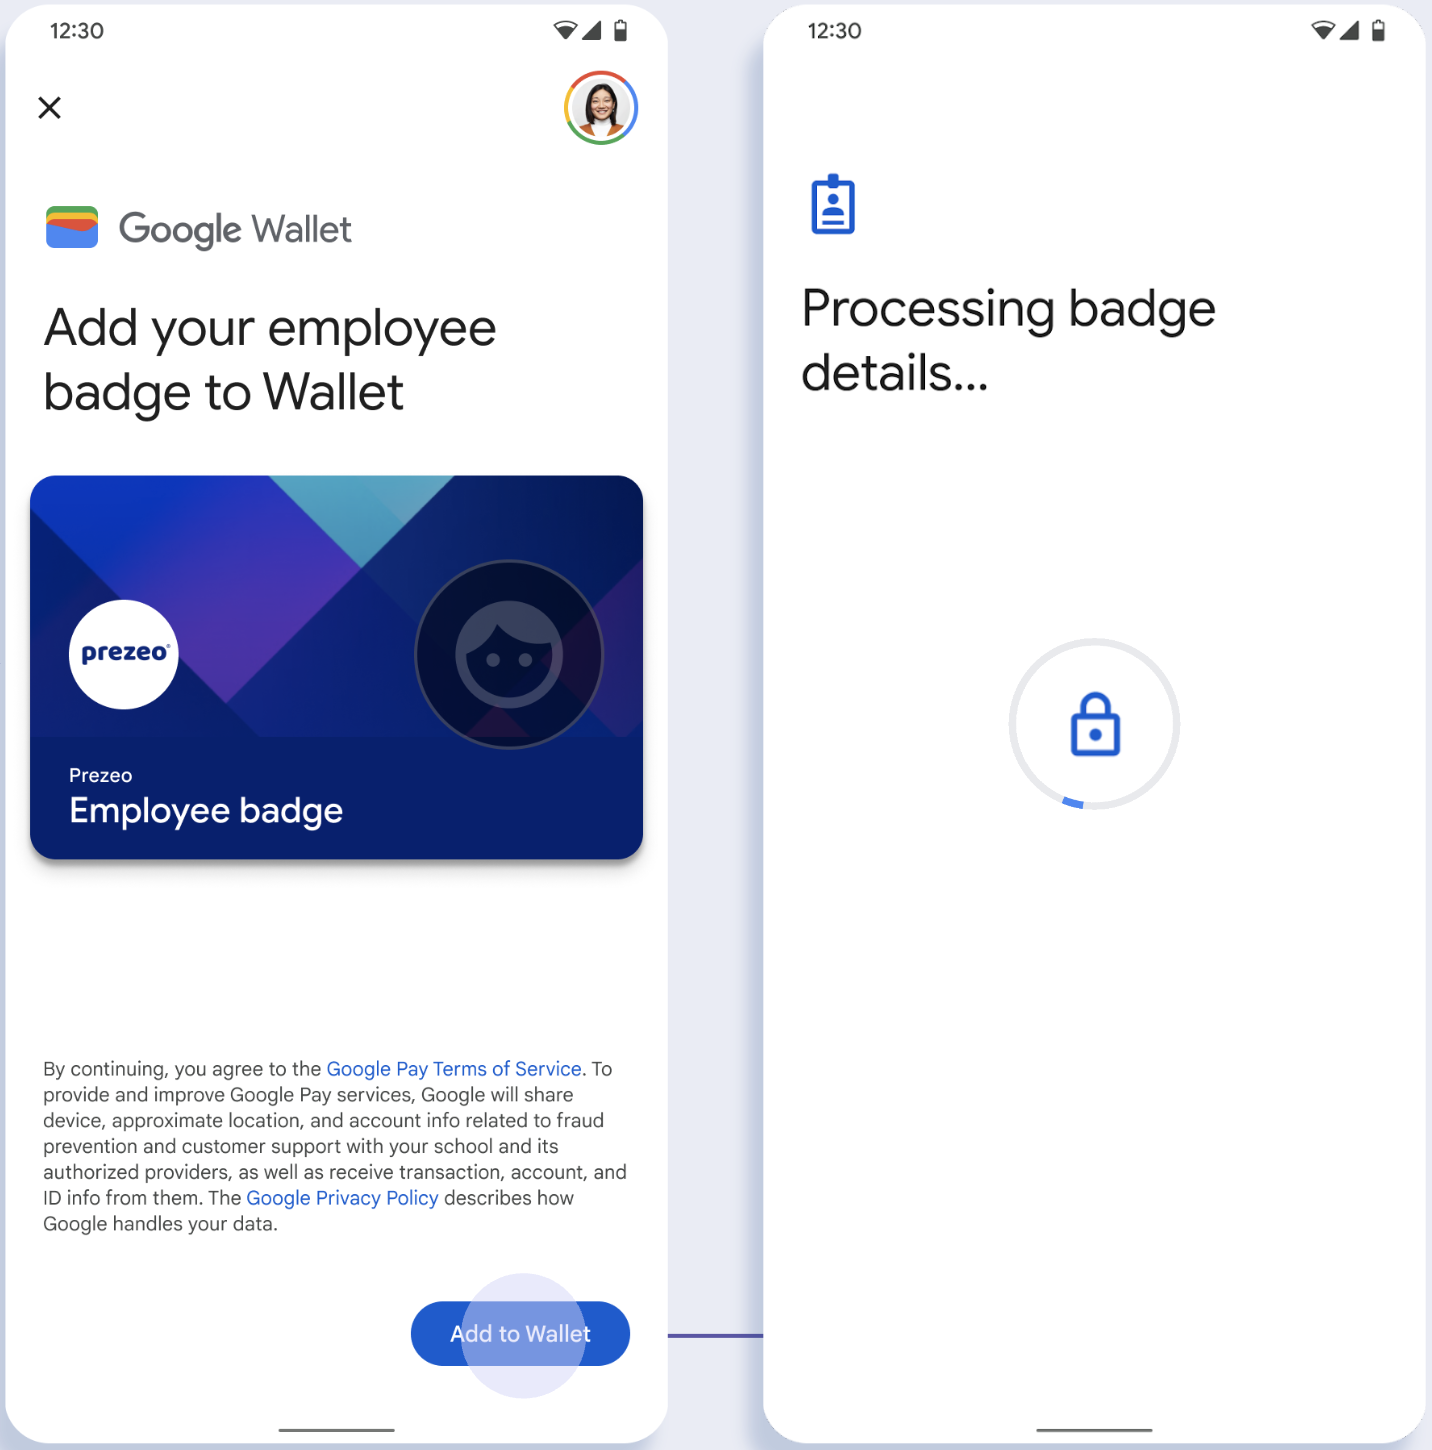 במסך הראשון, האפליקציה מתחברת אל Google Wallet. במסך השני, המשתמש מאשר את התנאים וההגבלות וממשיך.